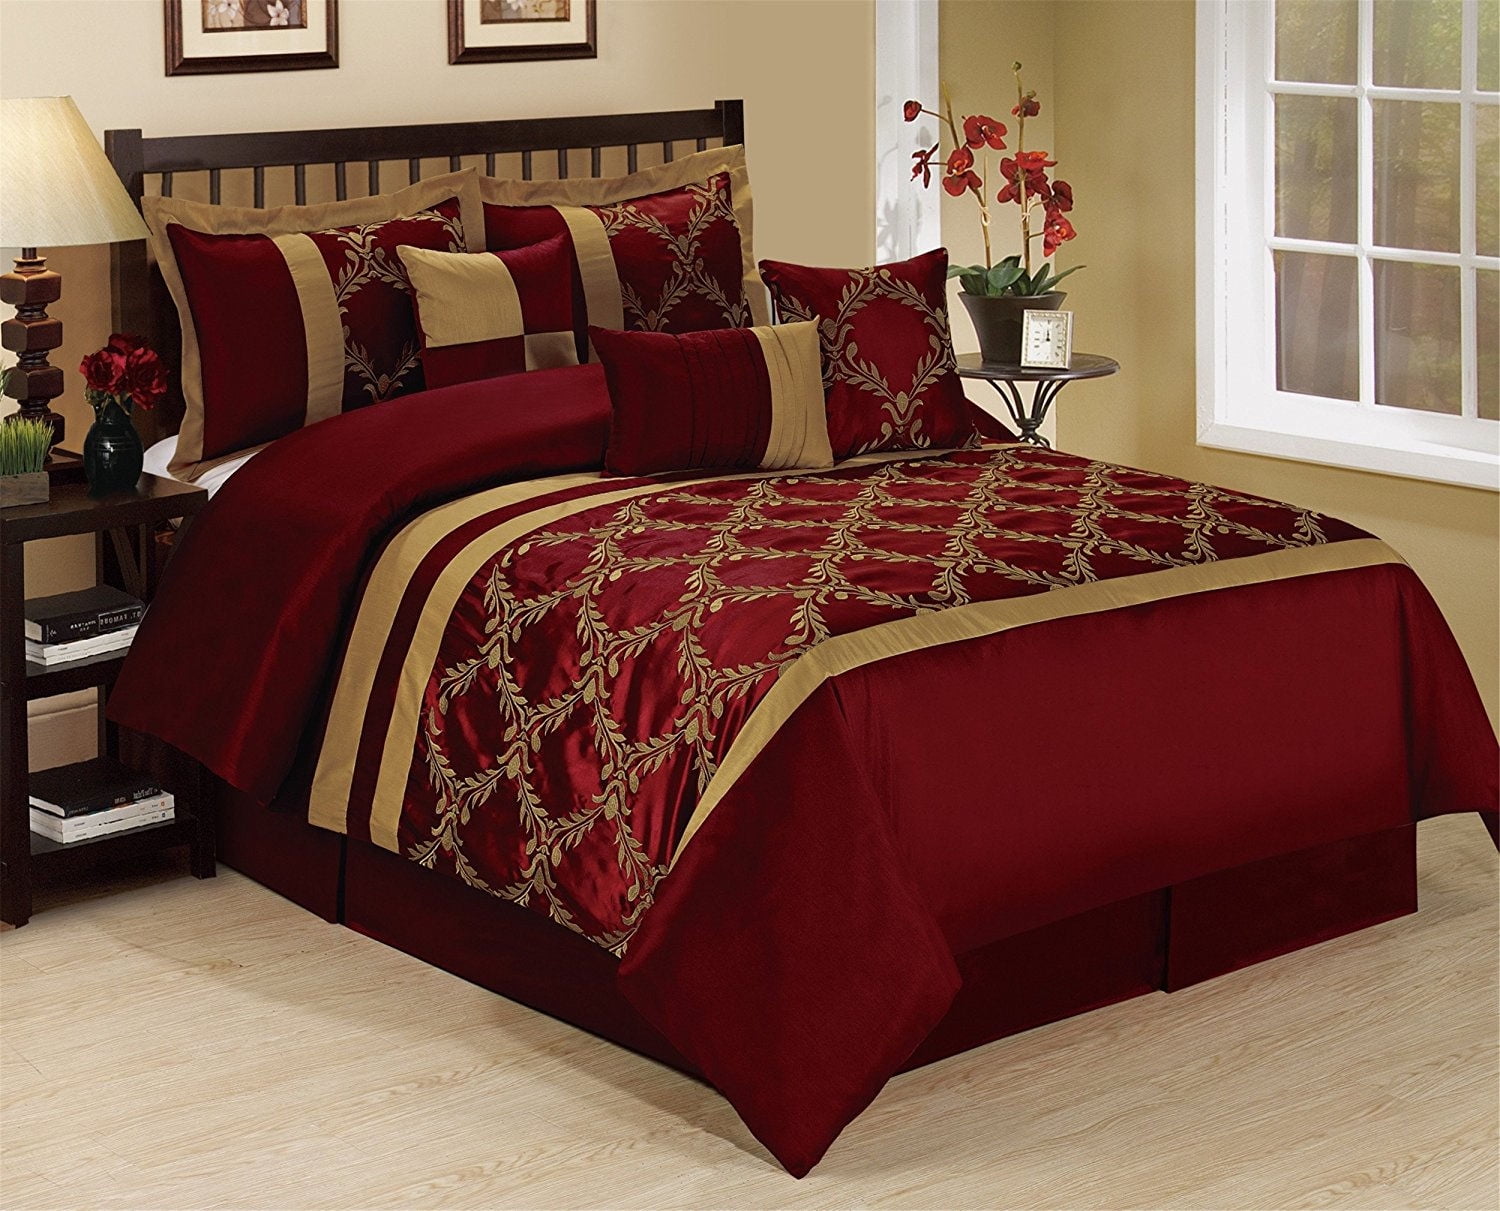 New Burgundy Black 3 Piece Comforter Set Queen Full Size Comforters Bedspread 